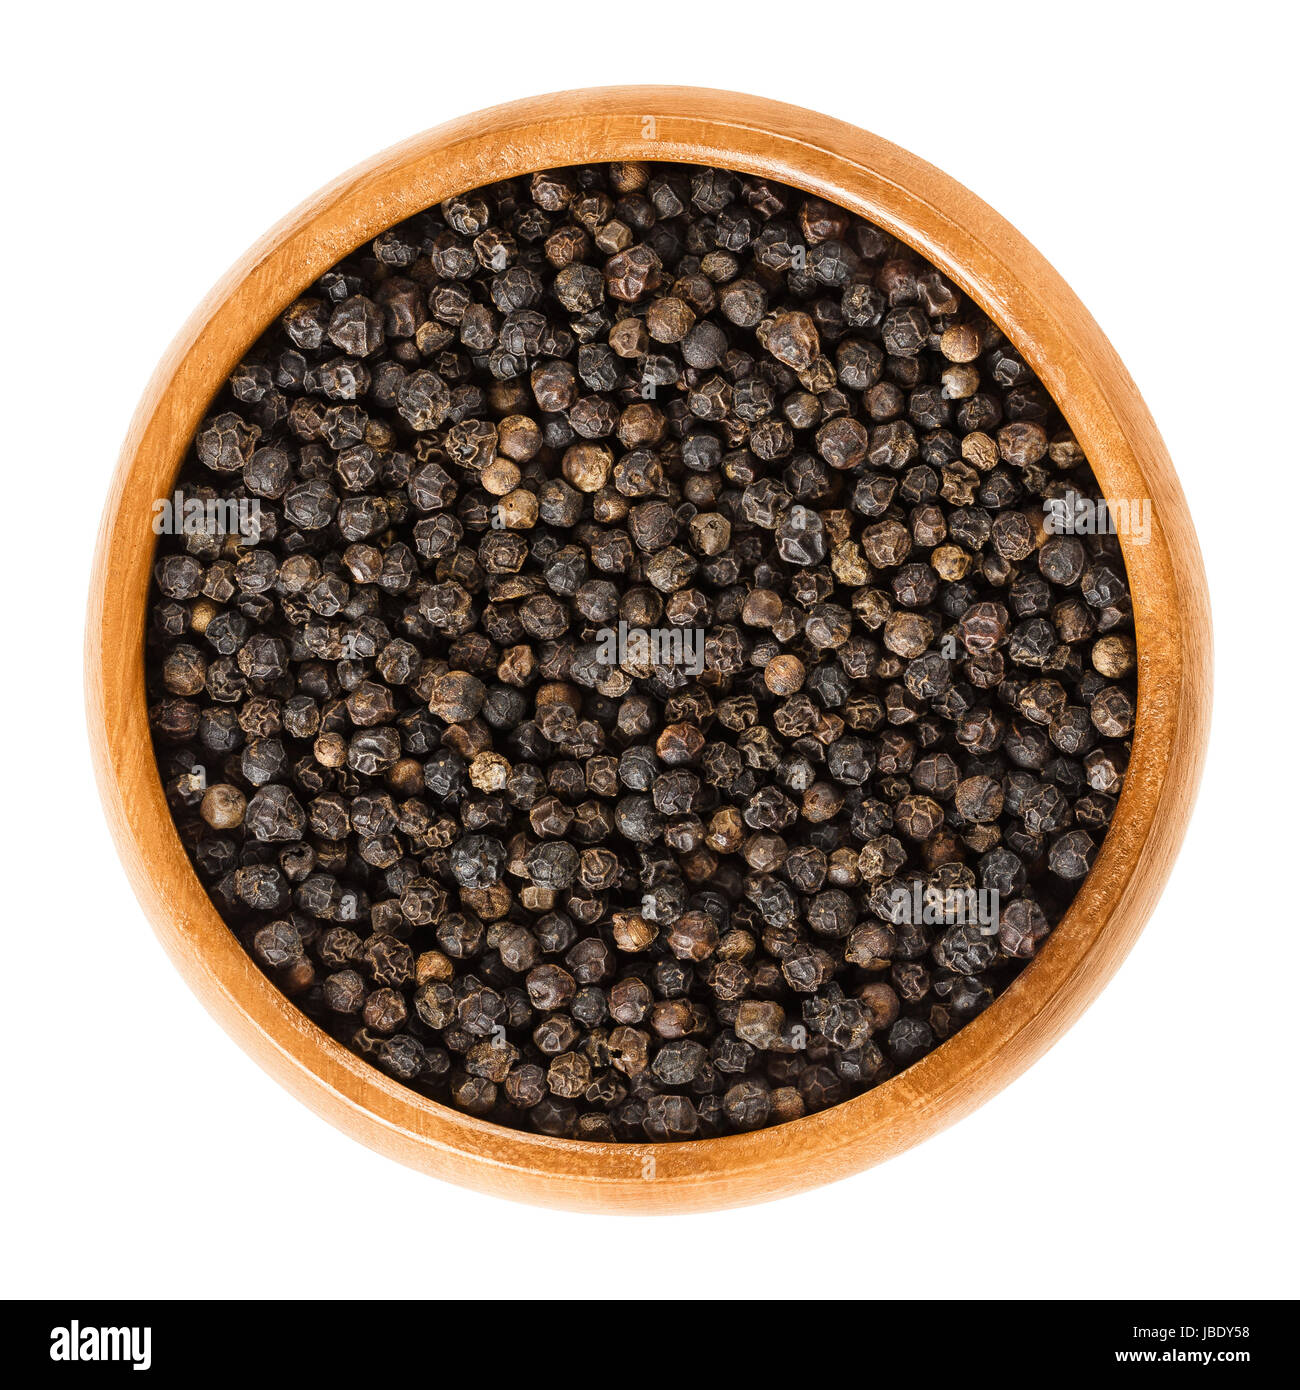 Pepe nero in ciotola di legno. Frutti di bosco essiccati di Piper nigrum sono chiamati di pepe. Realizzato da drupe immaturi della pianta di pepe. Spice. Foto Stock